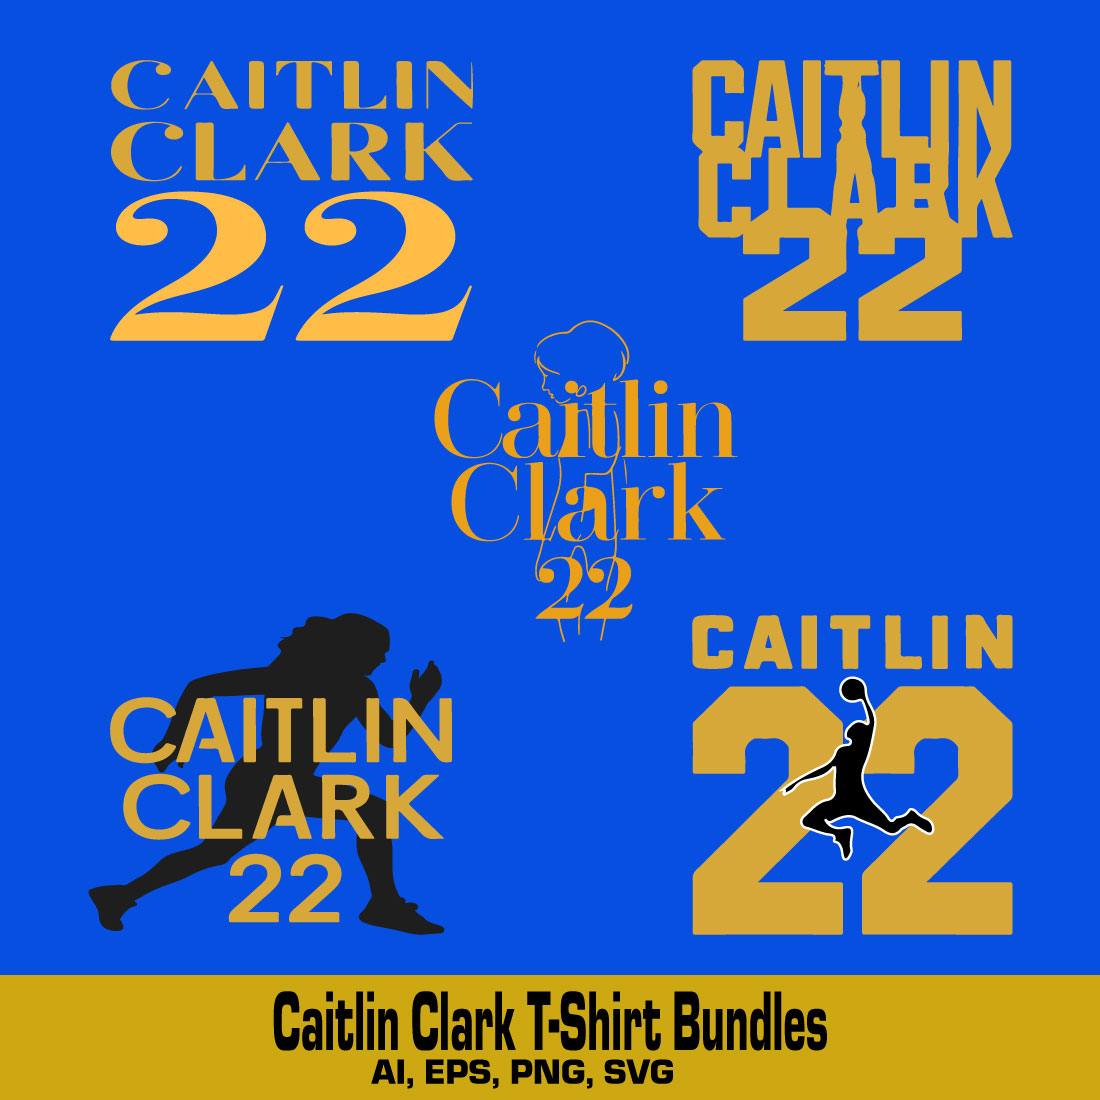 caitlin clark t-shirt Design Bundles preview image.